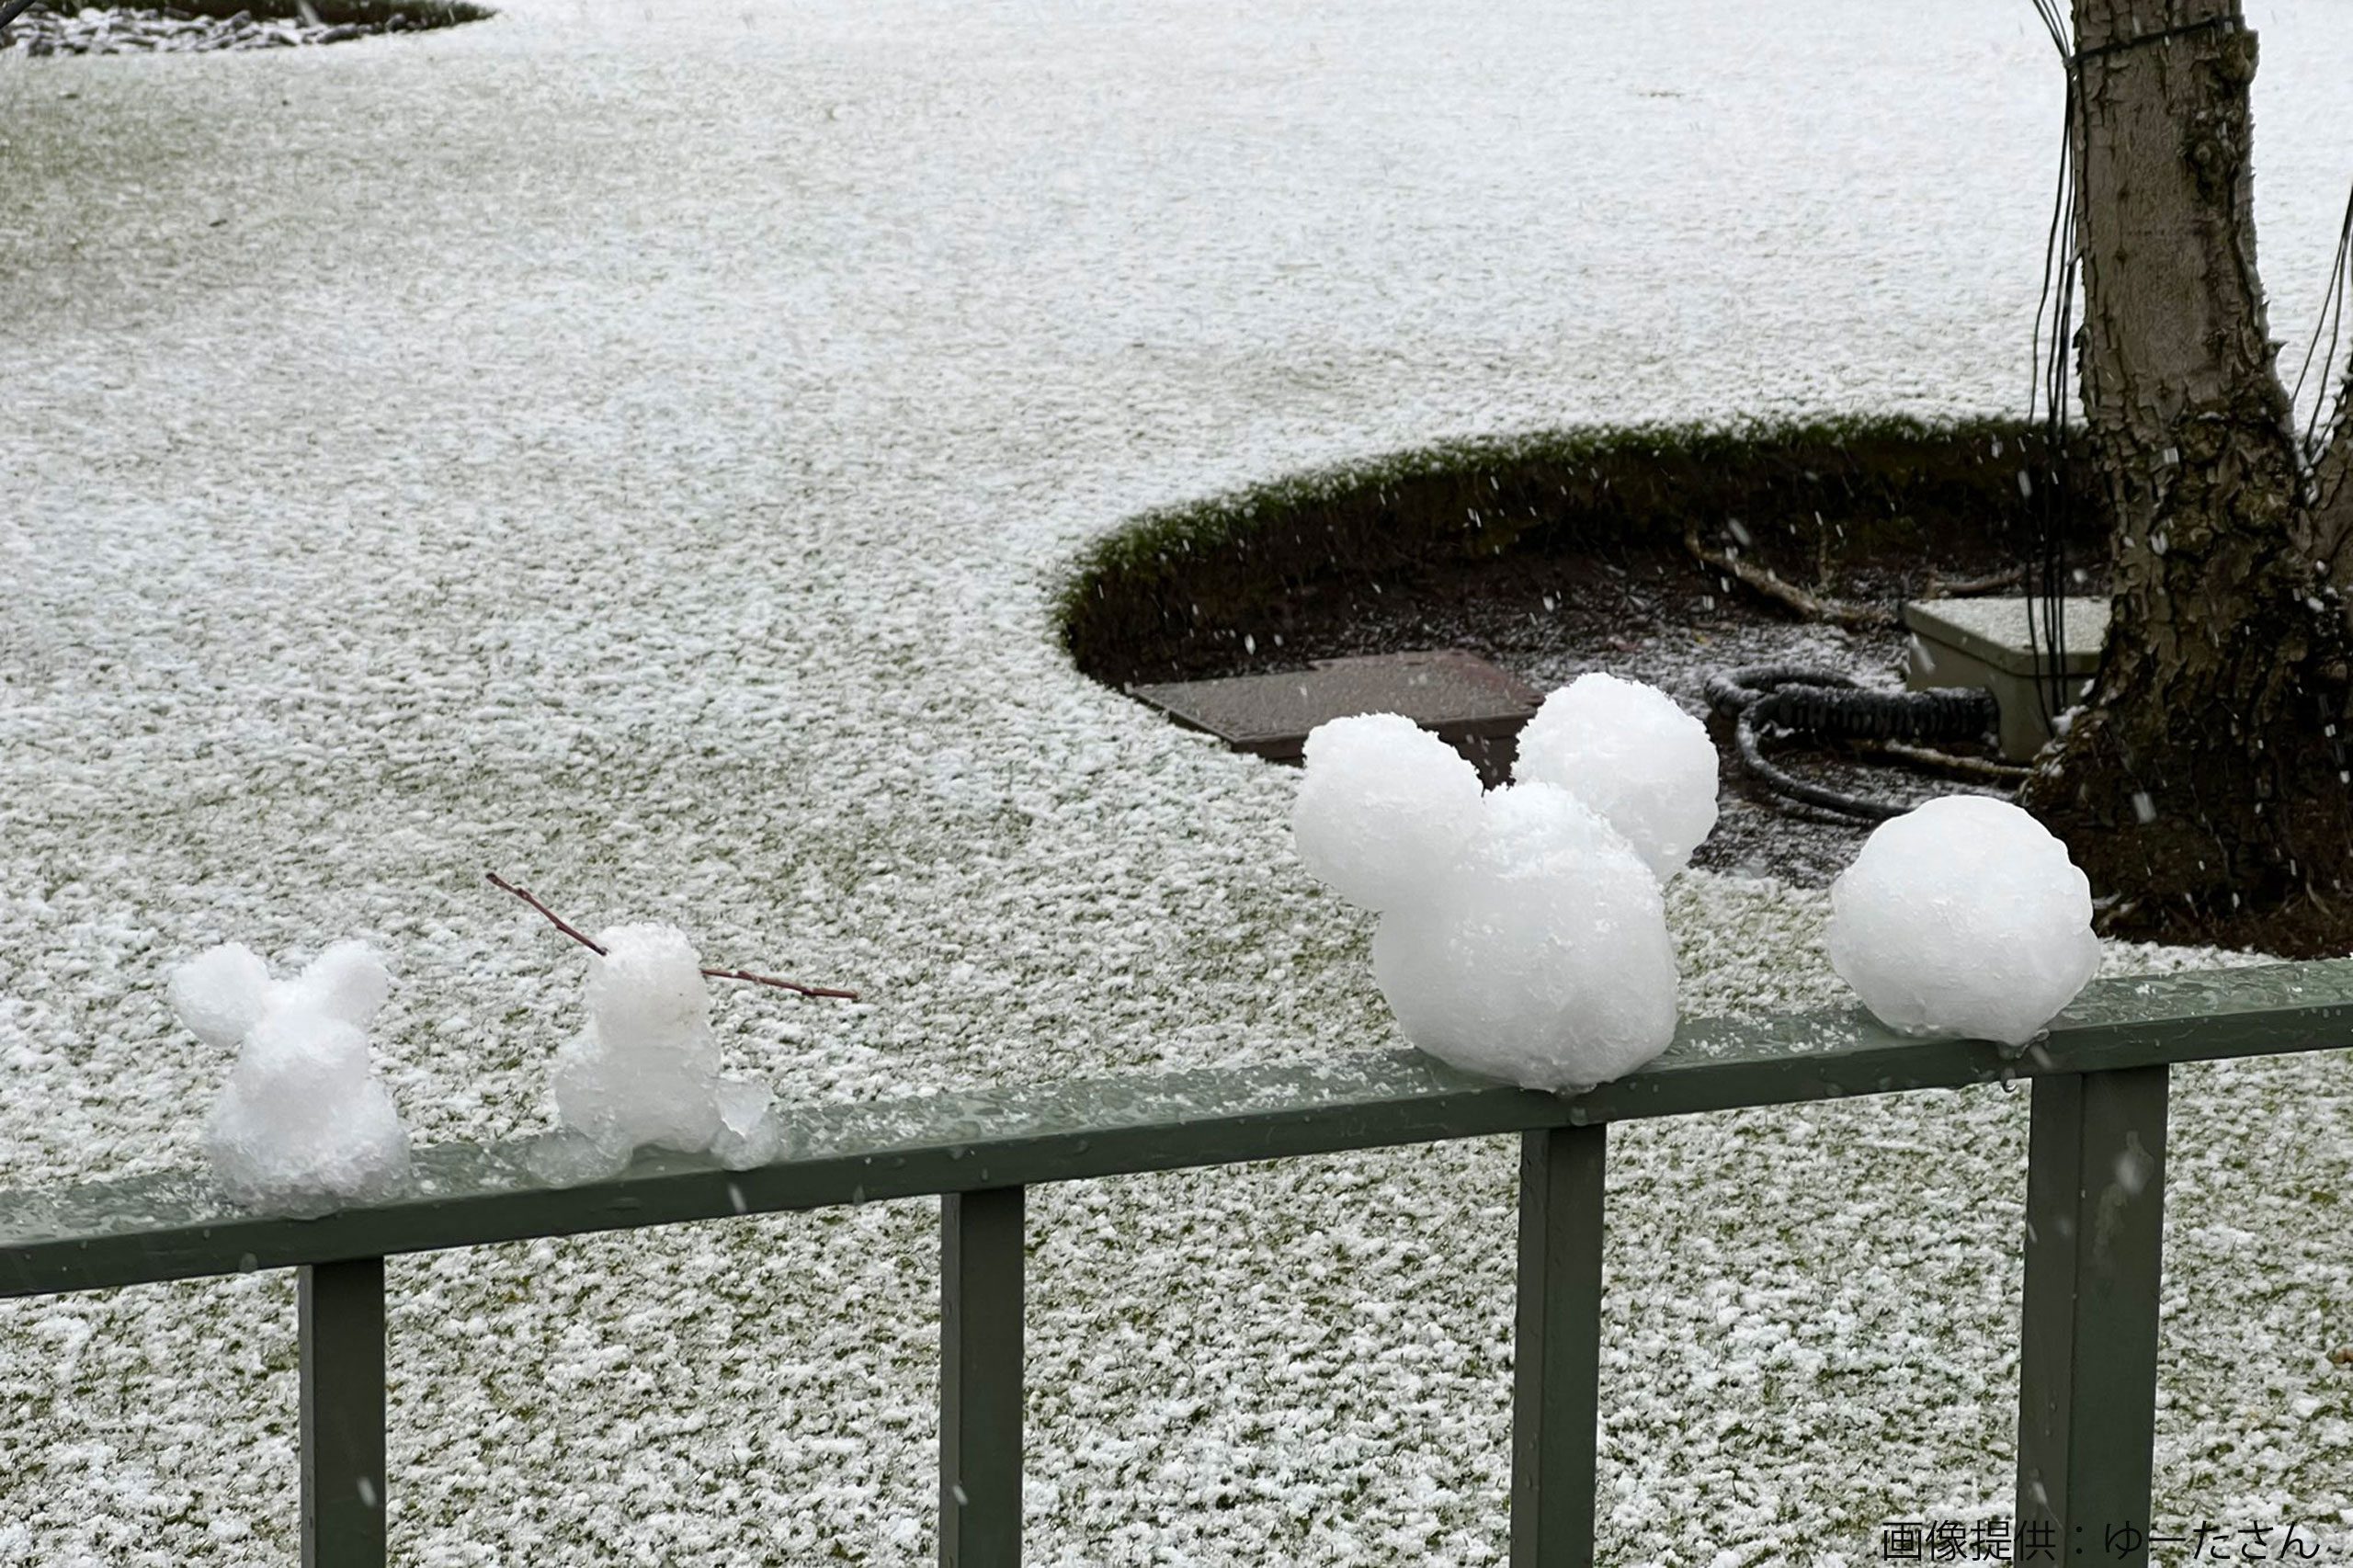 大雪に見舞われた東京ディズニー キャストの 神対応 が話題に 園内の至る所で Sirabee2106disney2